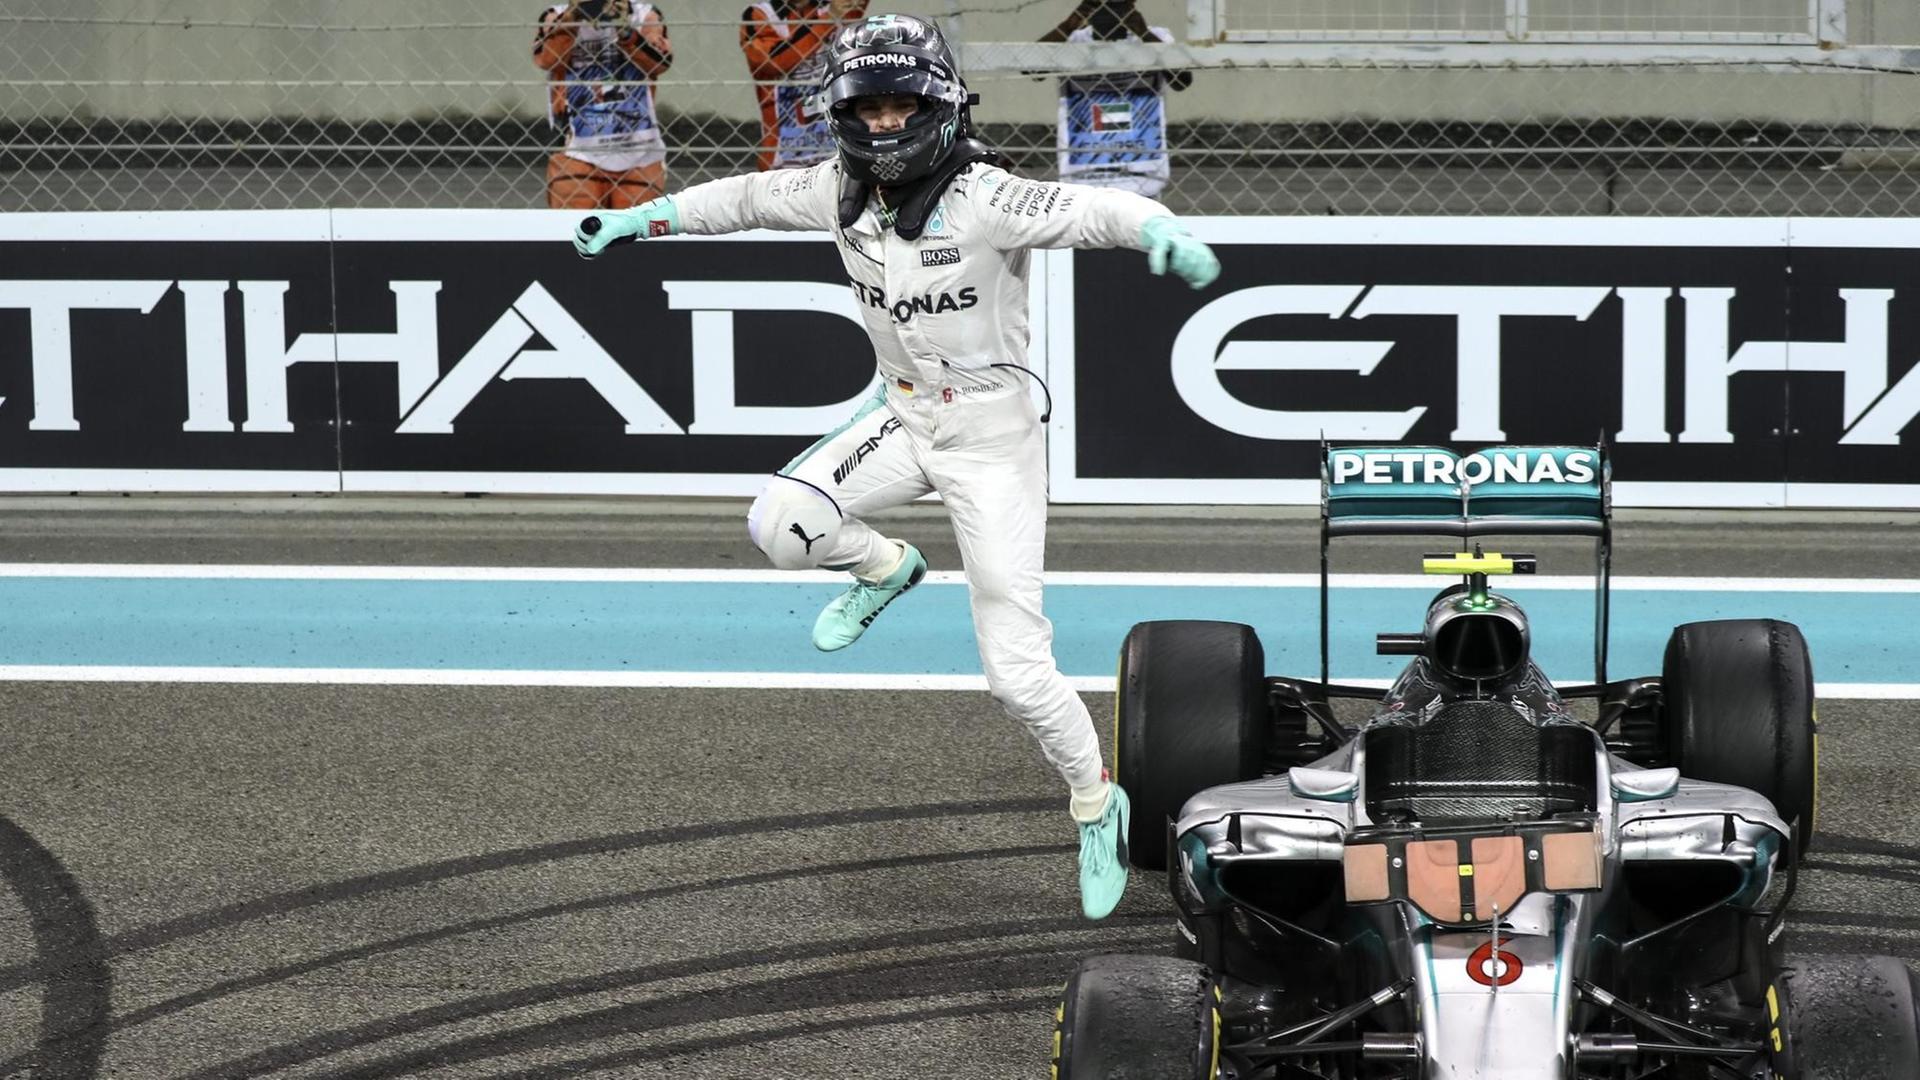 Nico Rosberg springt nach seinem Weltmeistersieg aus dem Auto